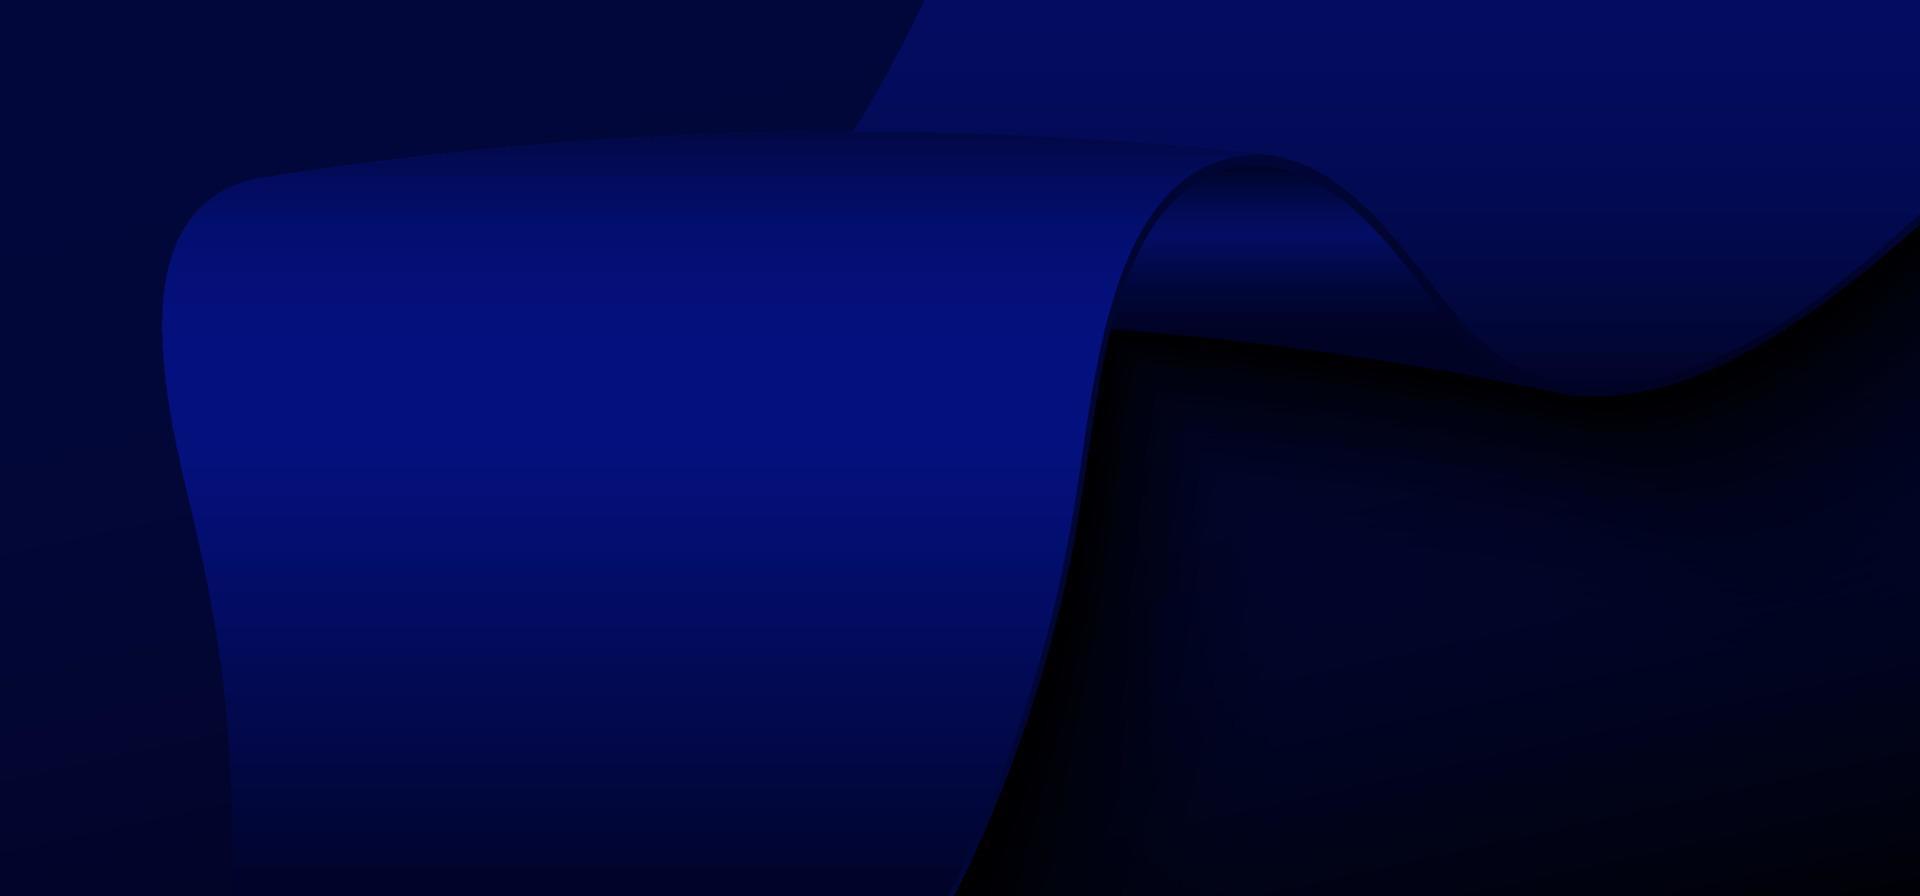 abstrakte Farbverlauf blaues Band 3D-Vorlage Designgrafik. überlappendes Design mit einfachem Präsentationshintergrund. Vektor